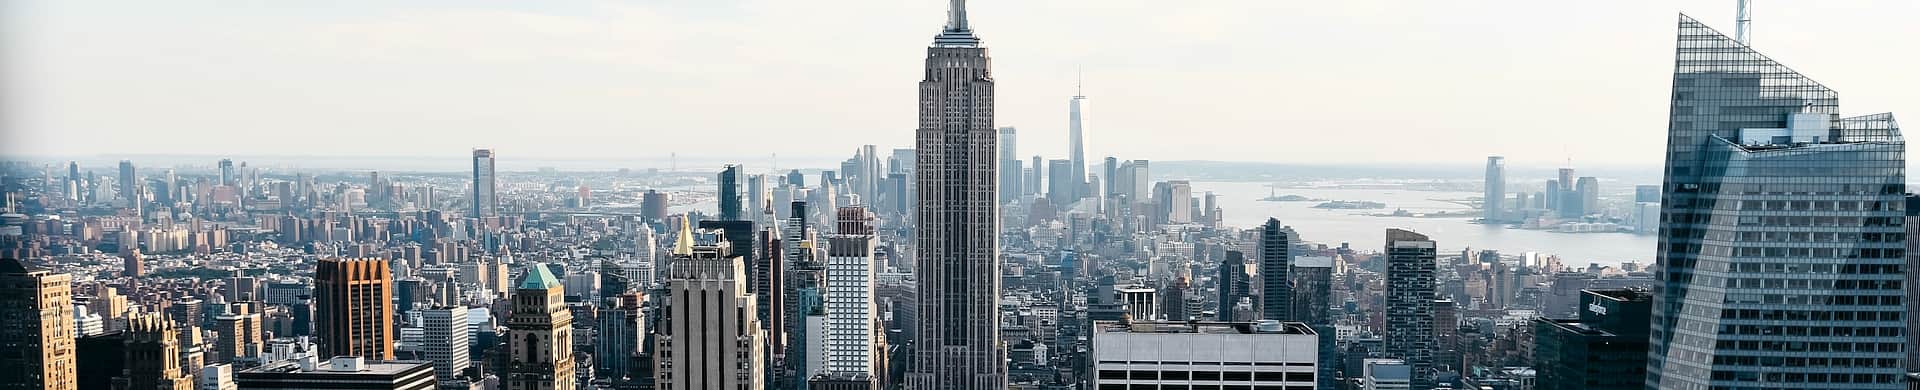 Empire State Building - tło nagłówka strony